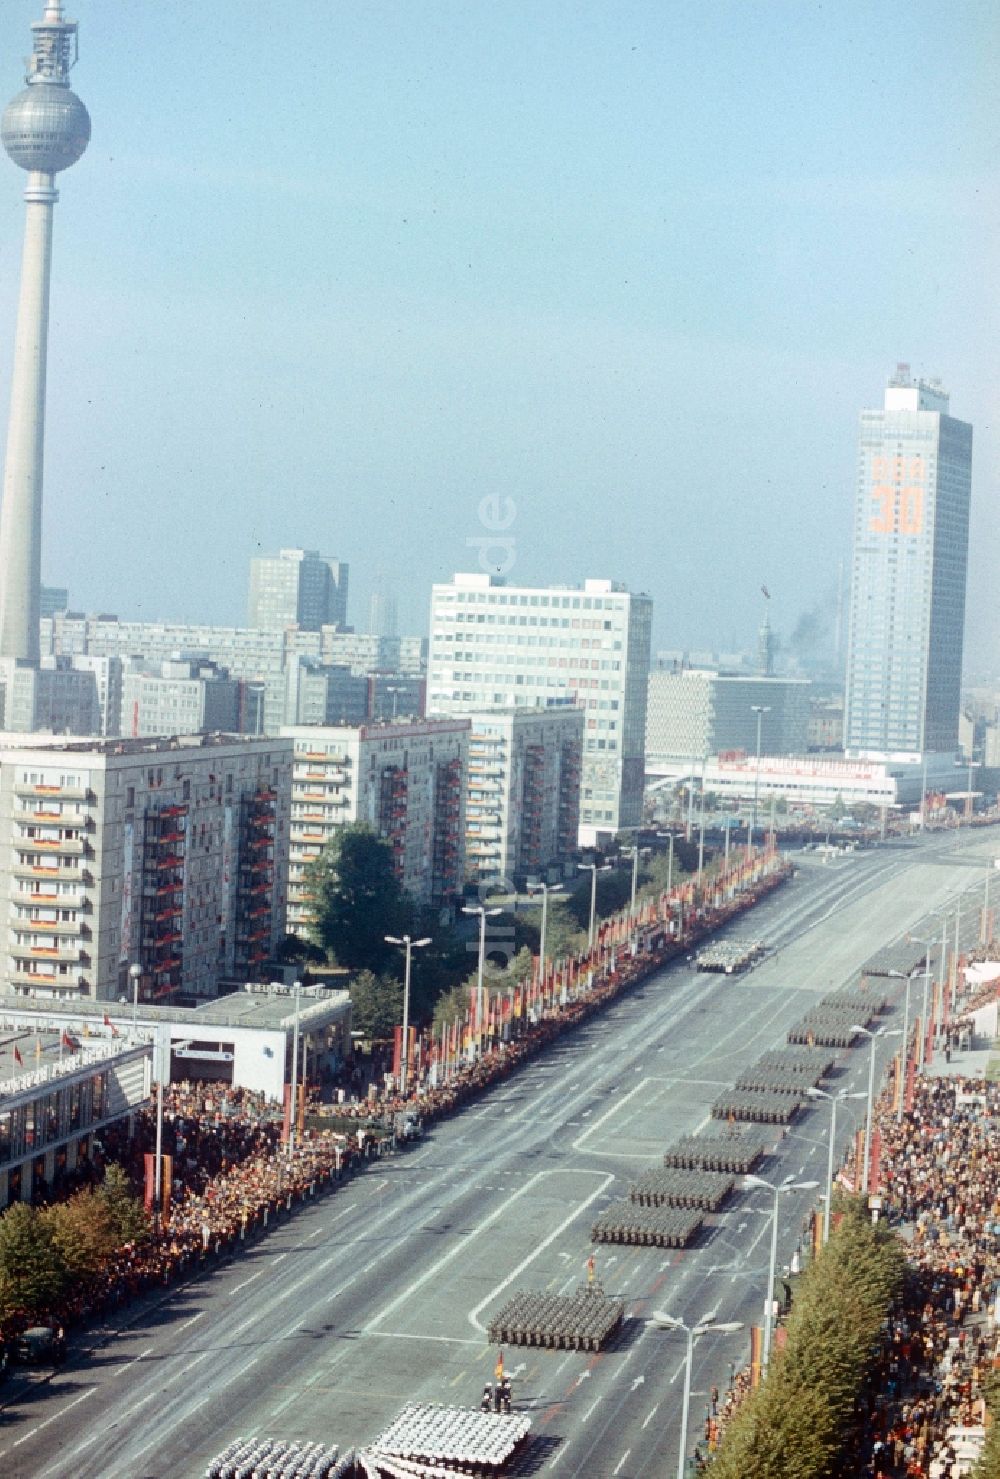 DDR-Bildarchiv: Berlin - Ehrenparade der NVA zum 30. Jahrestag der Gründung der DDR auf der Karl-Marx-Allee in Berlin, der ehemaligen Hauptstadt der DDR, Deutsche Demokratische Republik